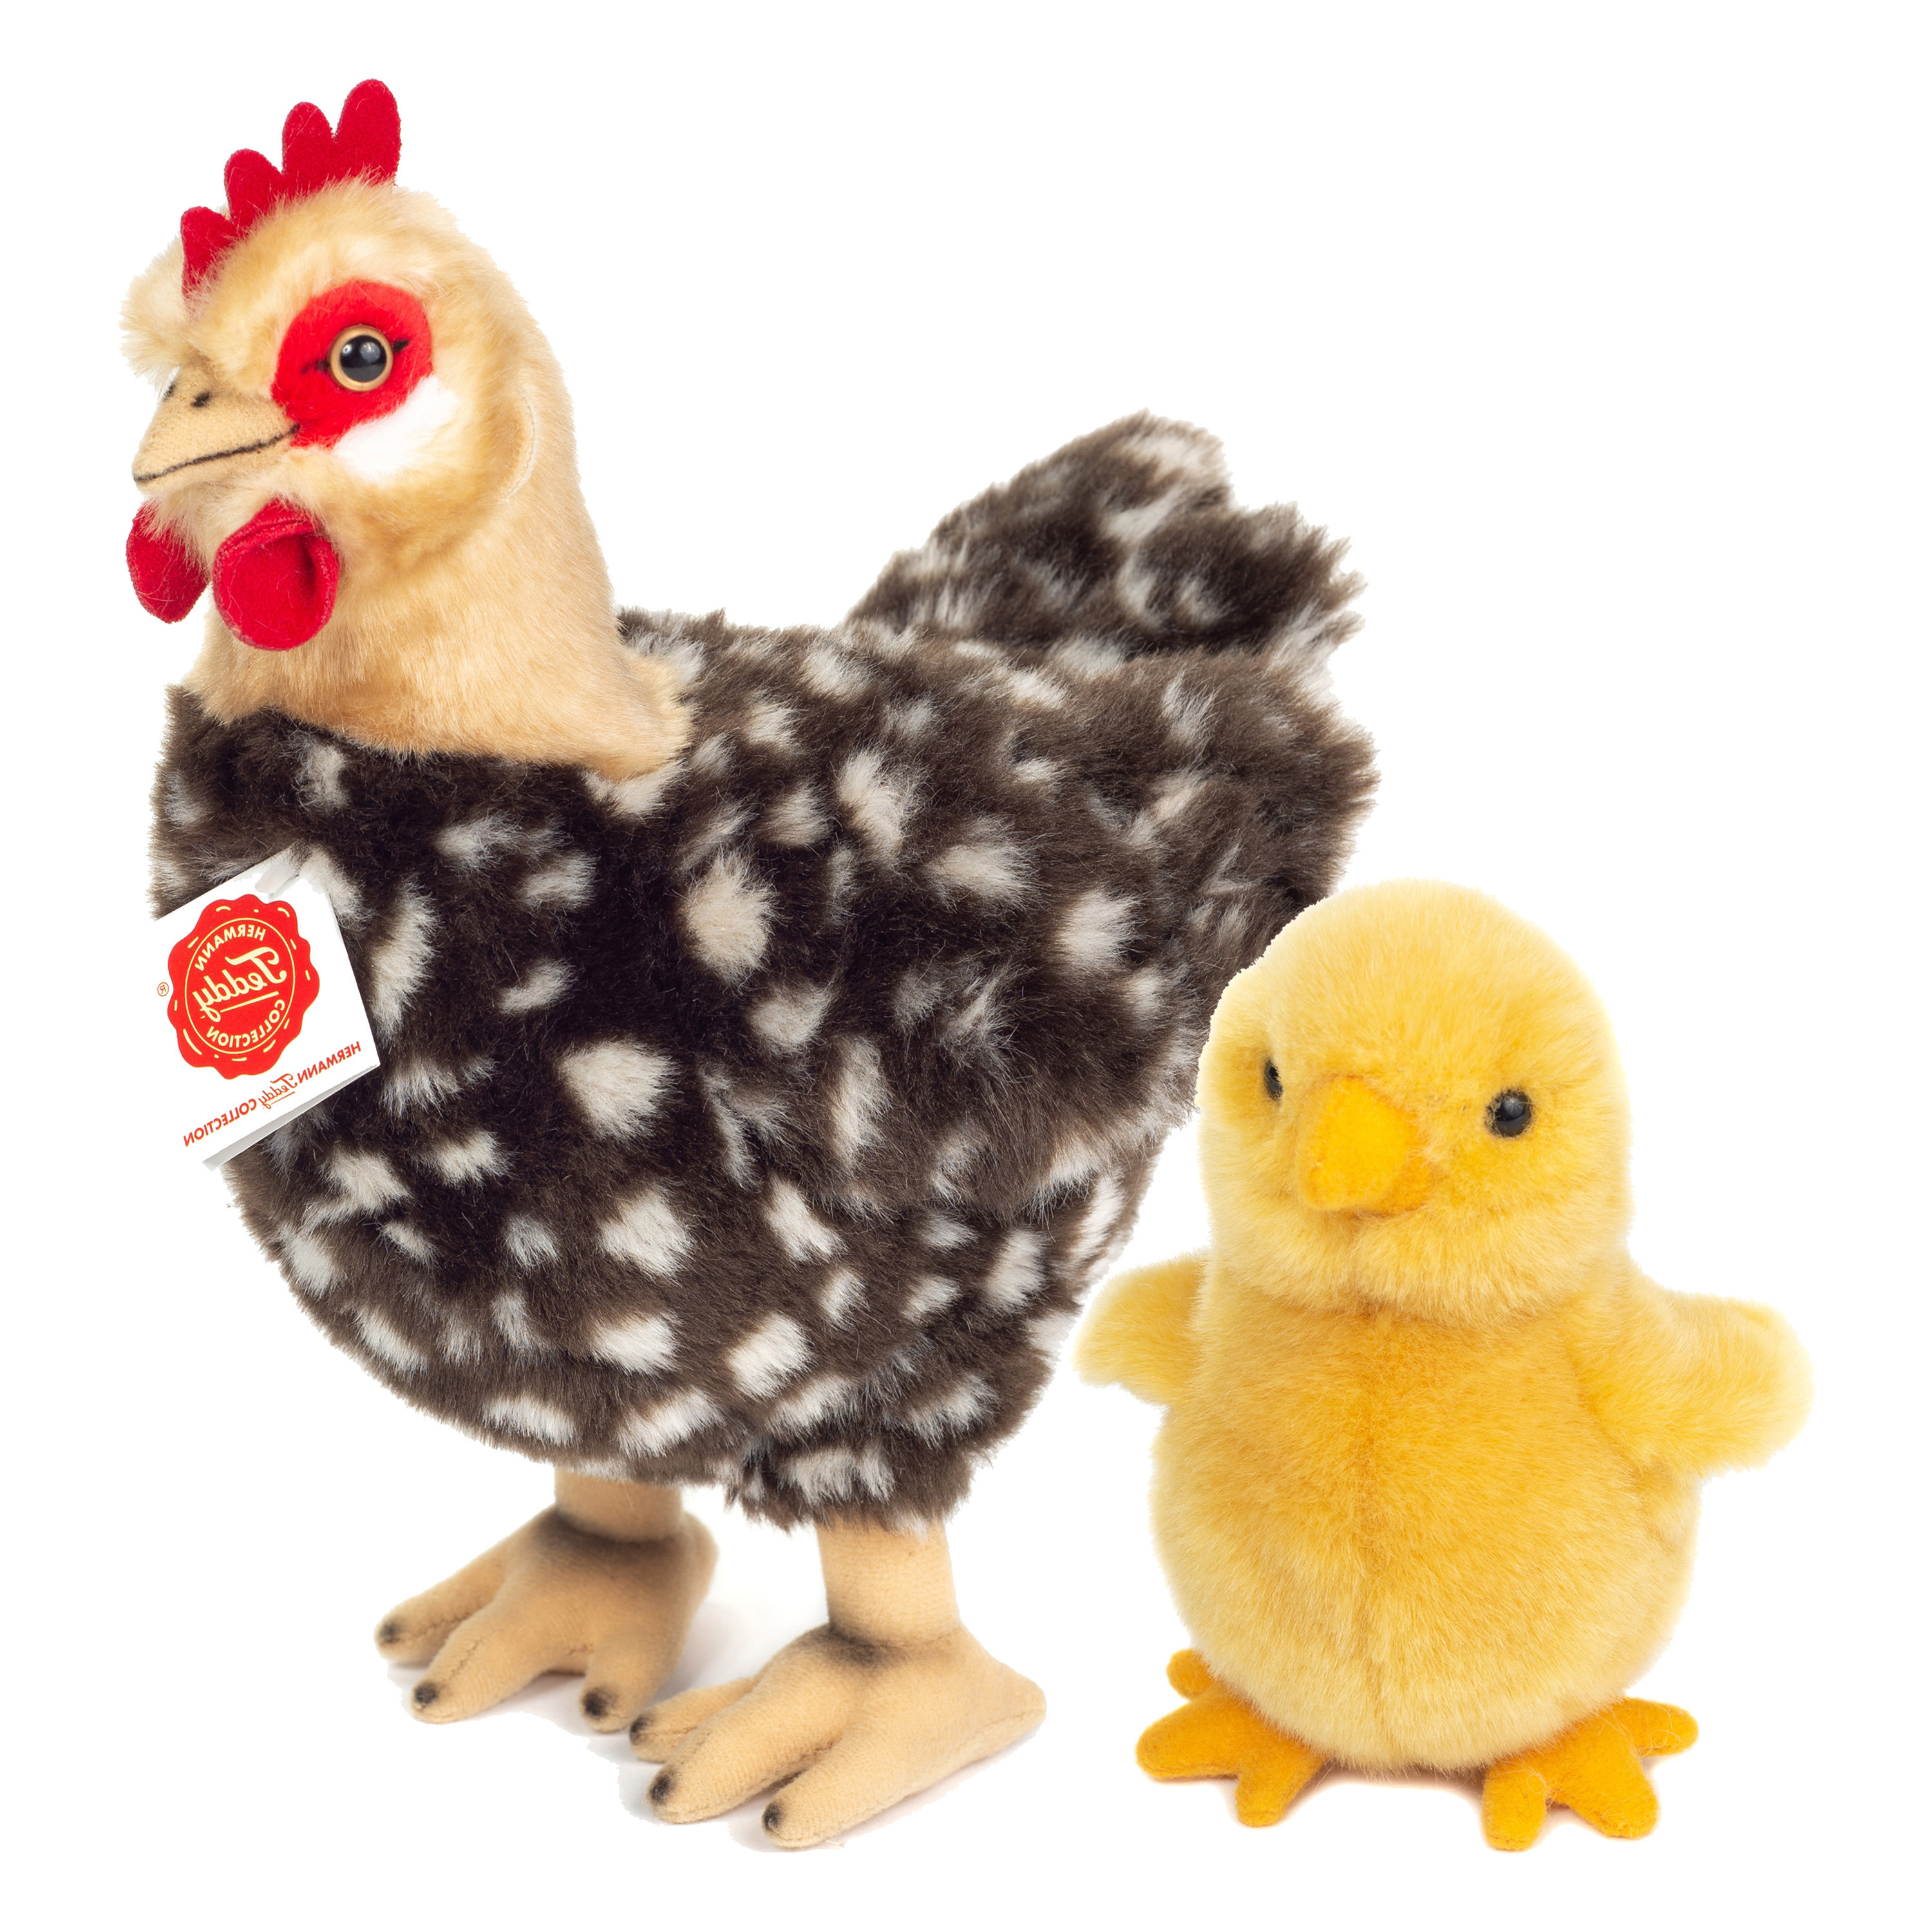 Hermann Teddy Pluche kip knuffel - 24 cm - multi kleur - met een kuiken van 10 cm - kippen familie -